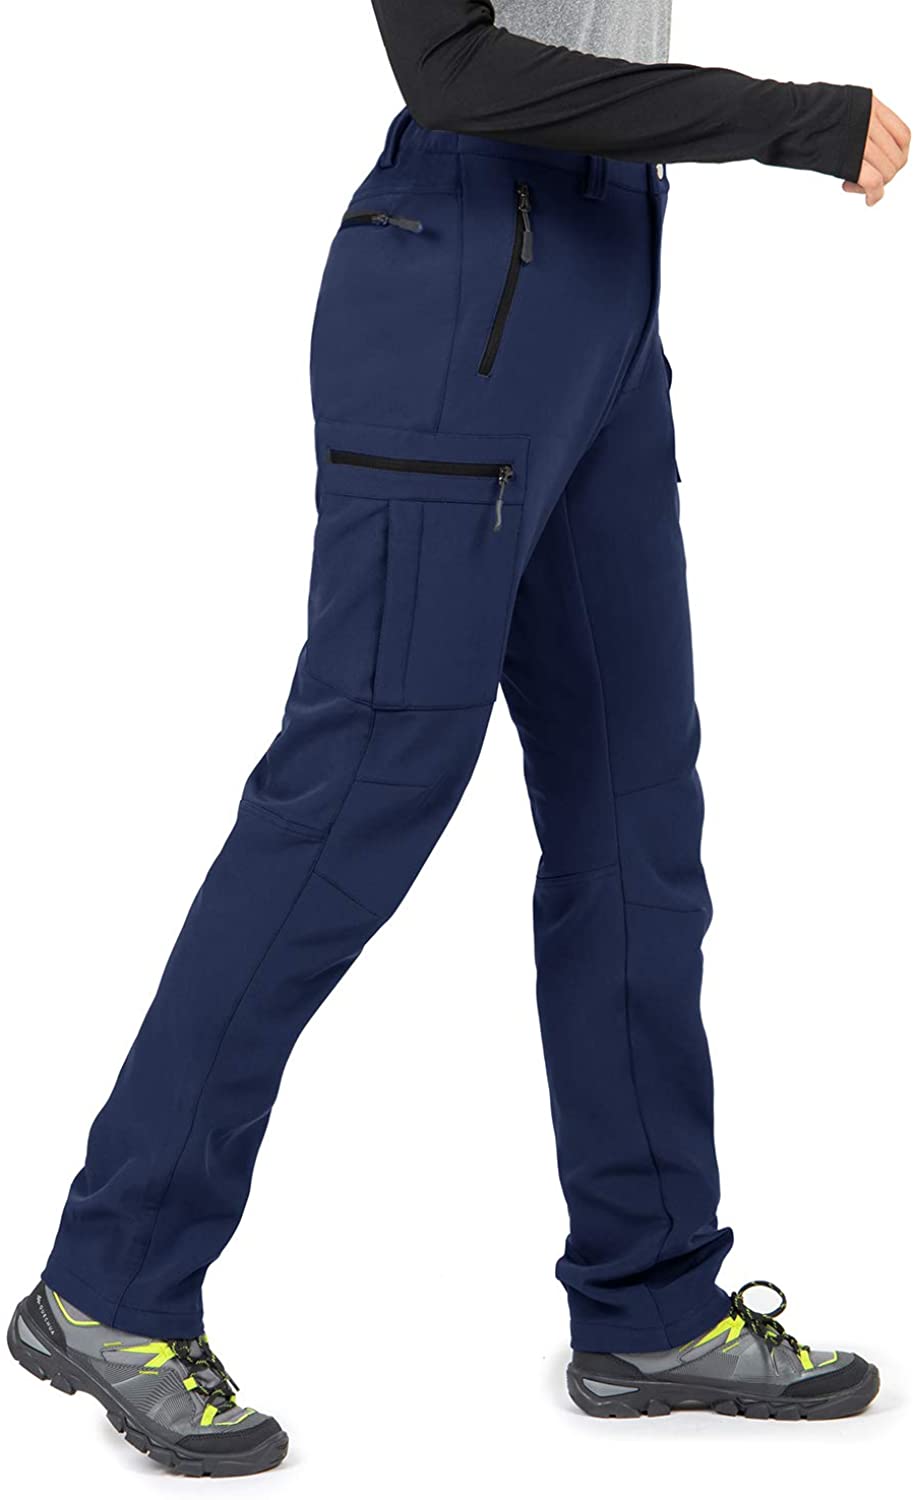 LSFYSZD Women Men Waterproof Ski Pants Softshell Fleece Lined